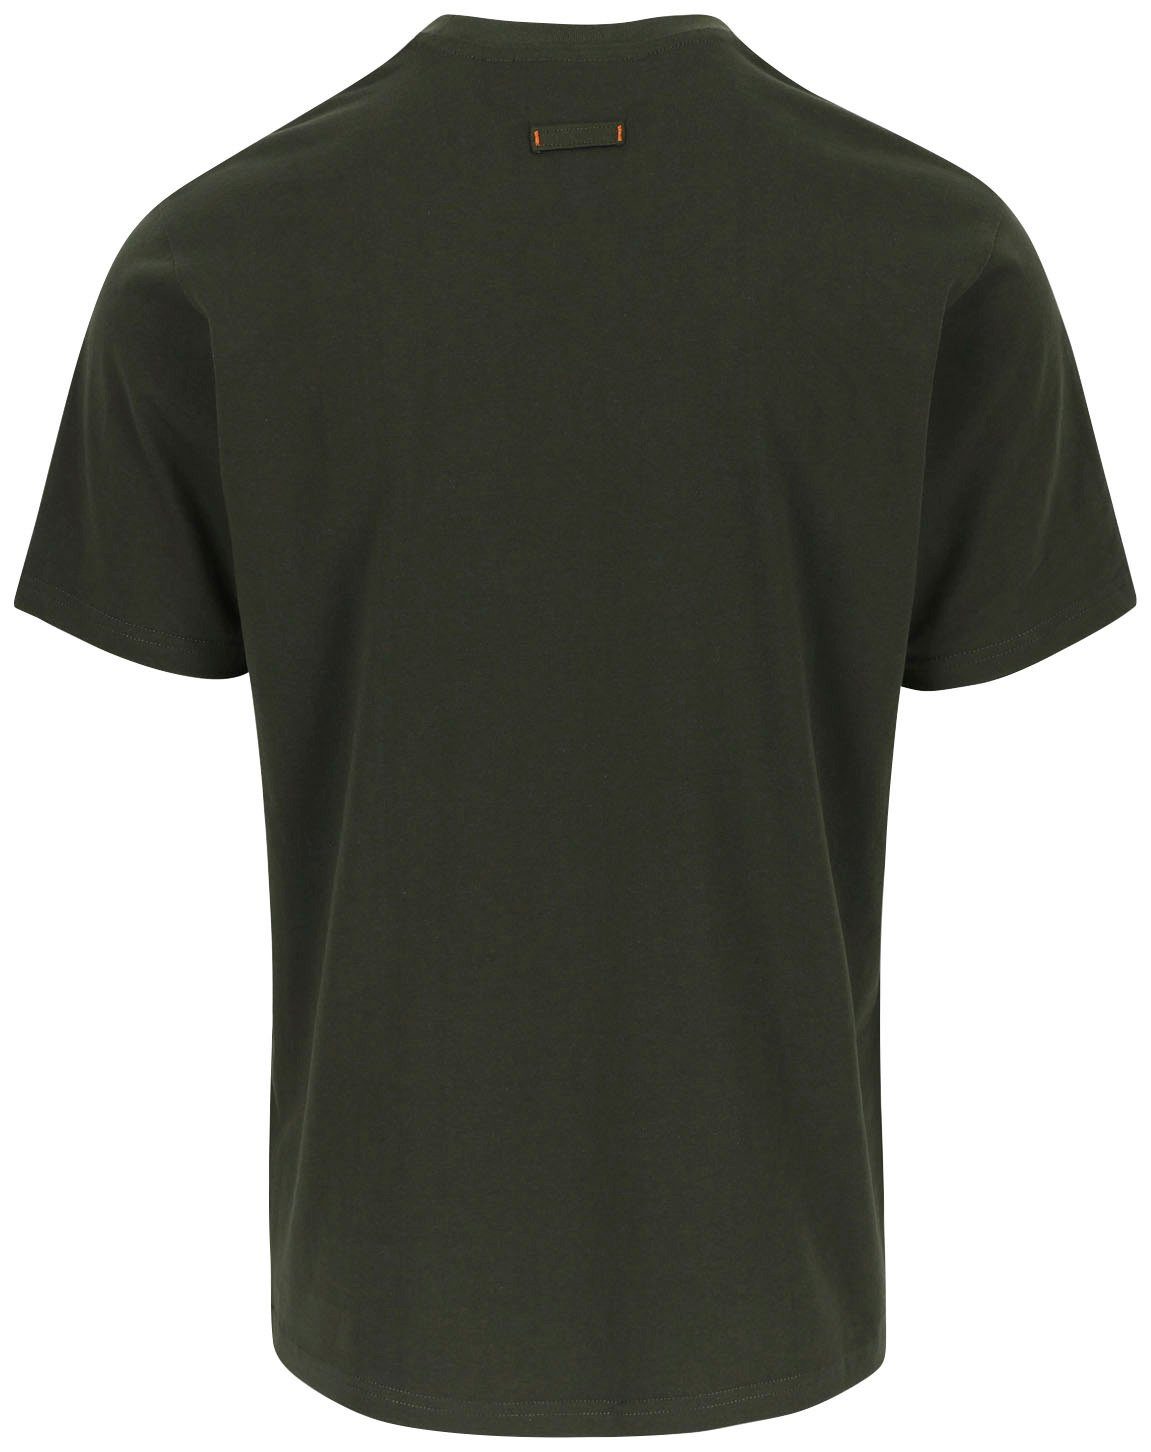 Herock®-Aufdruck, Herock ENI Tragegefühl Baumwolle, Rundhals, mit khaki angenehmes T-Shirt